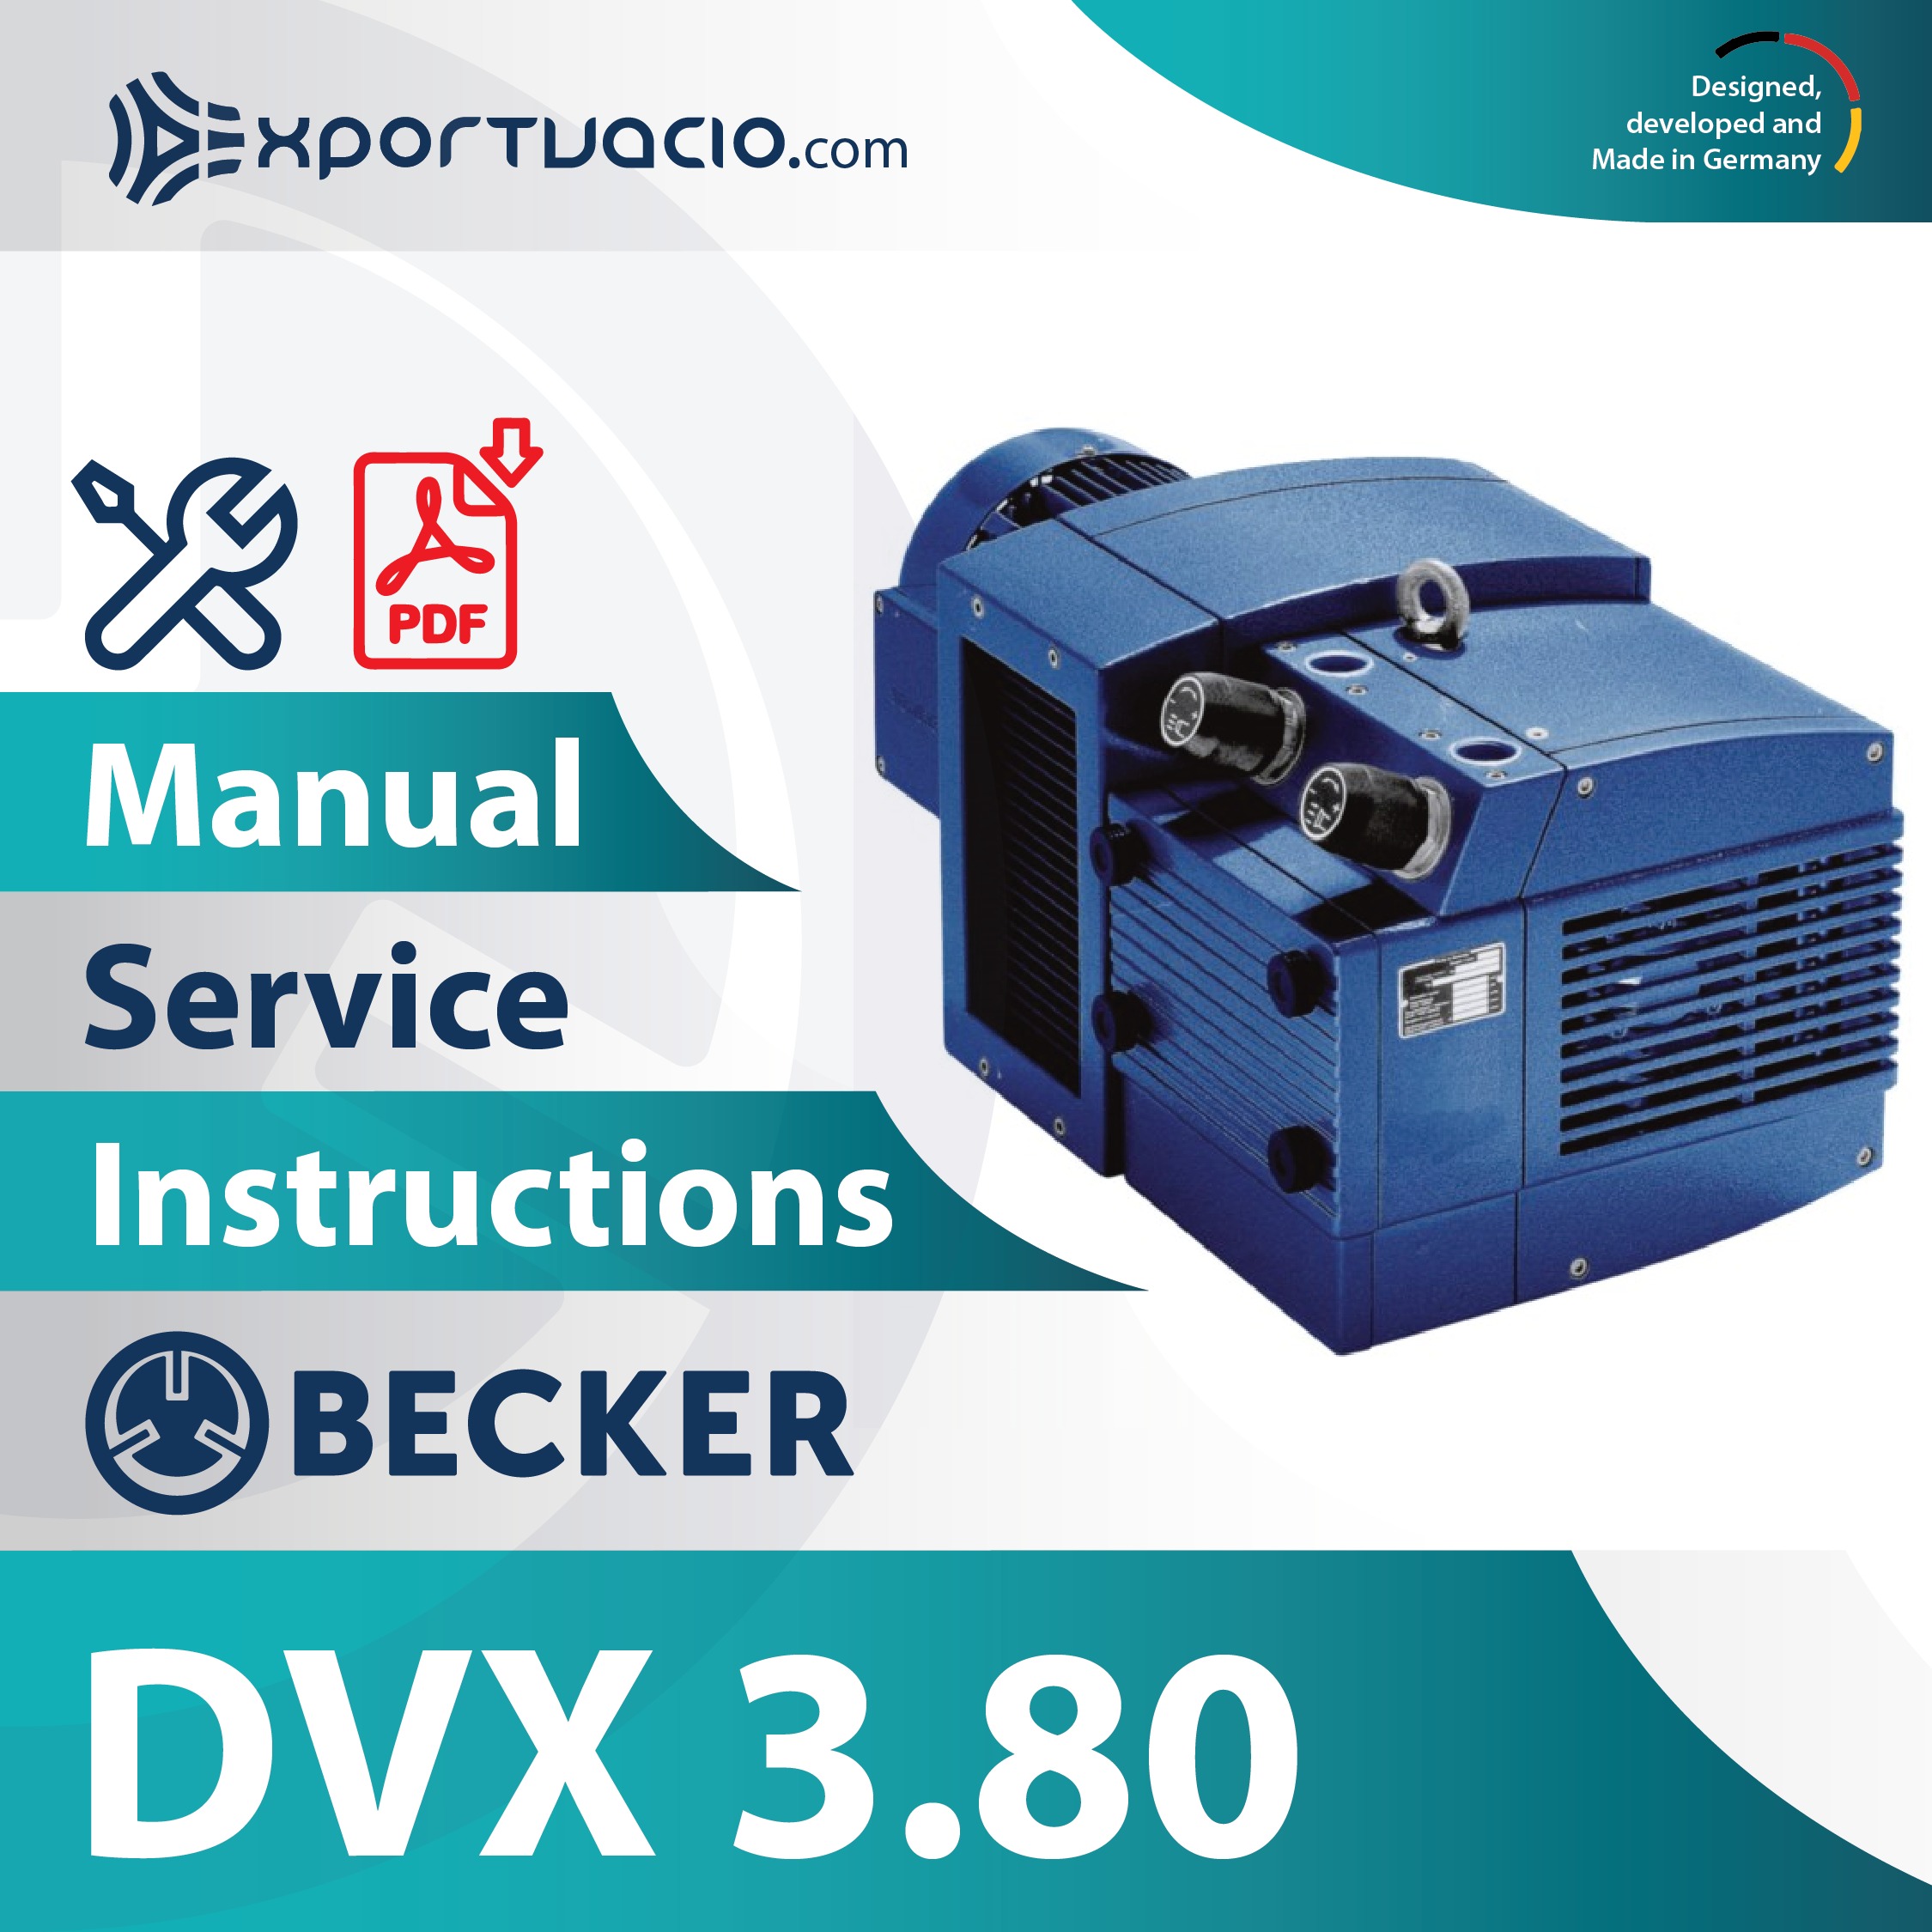 Becker DVX 3.80